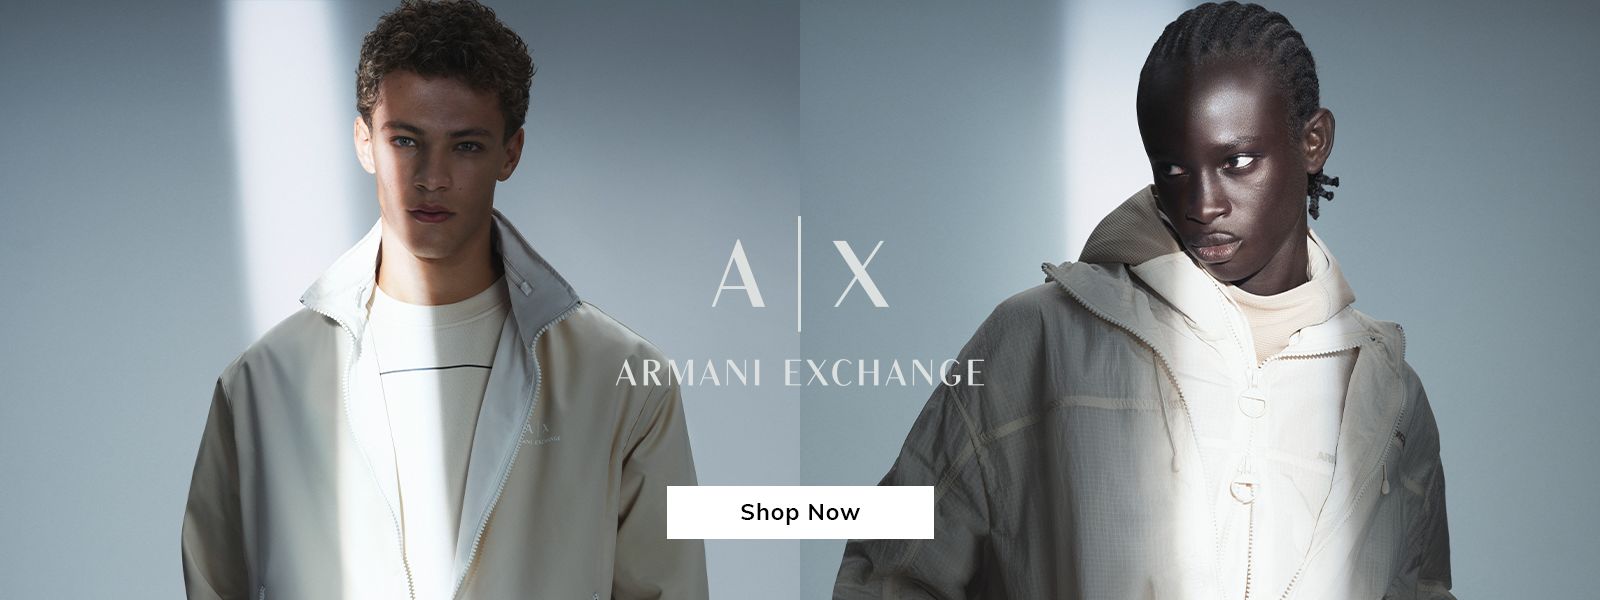 Armani Exchange - Shop Now